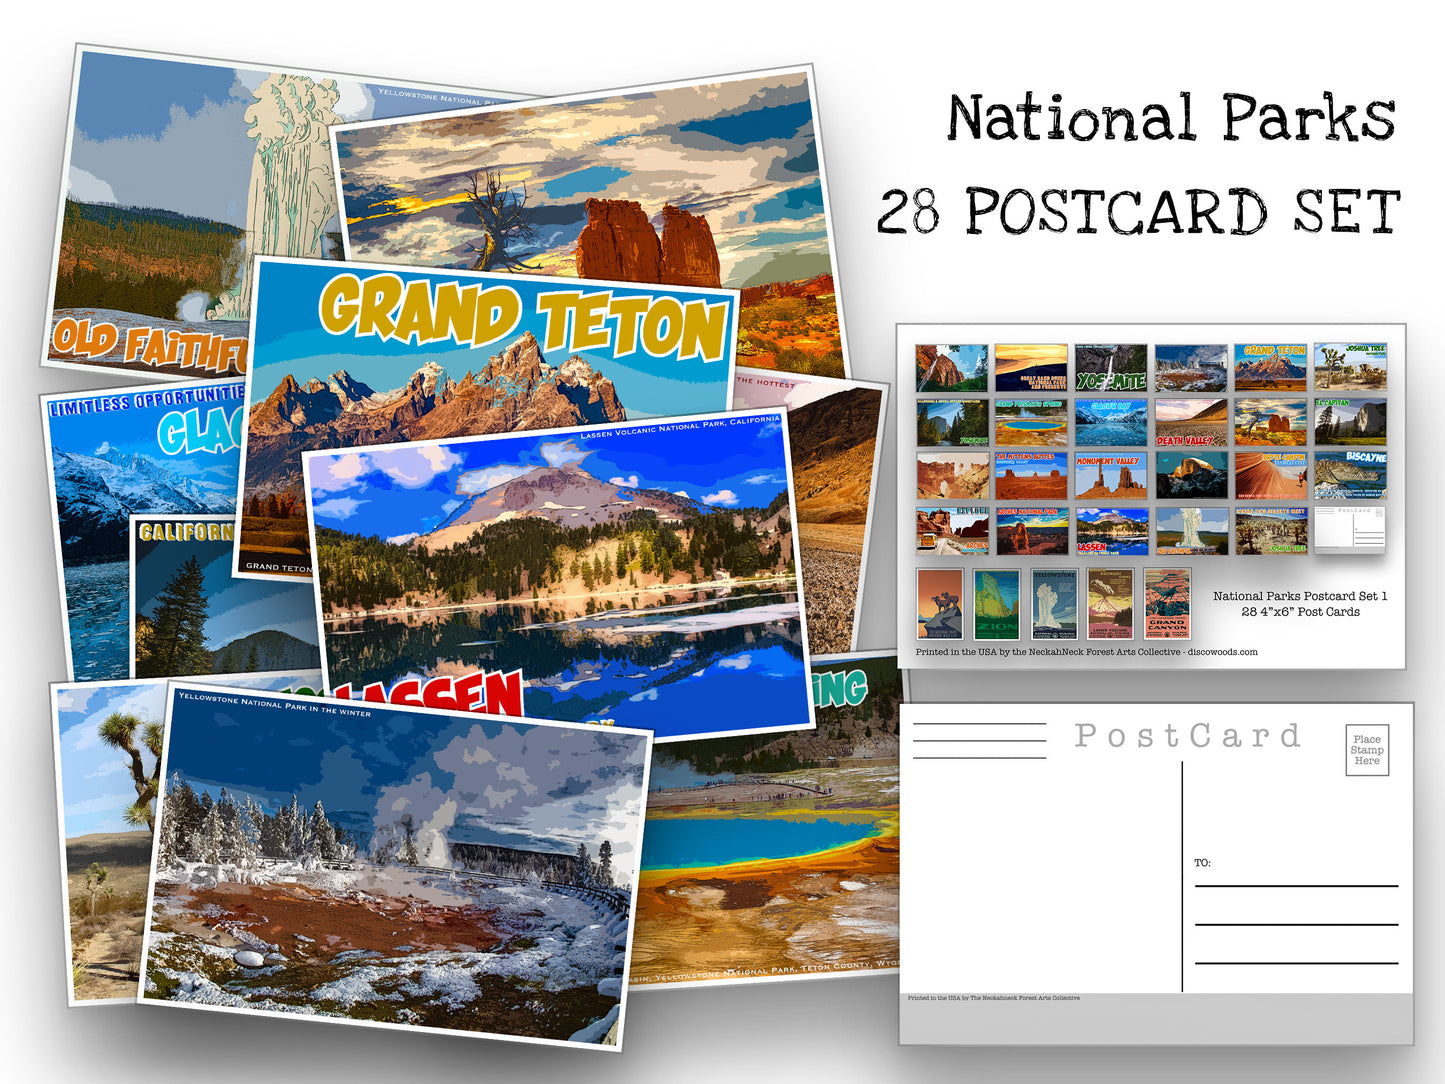 National Parks Postcard Set - Set of 28 National Park Postcards - Travel - Adventure - Natural Wonders - Scrapbooking -collage - Post Cards